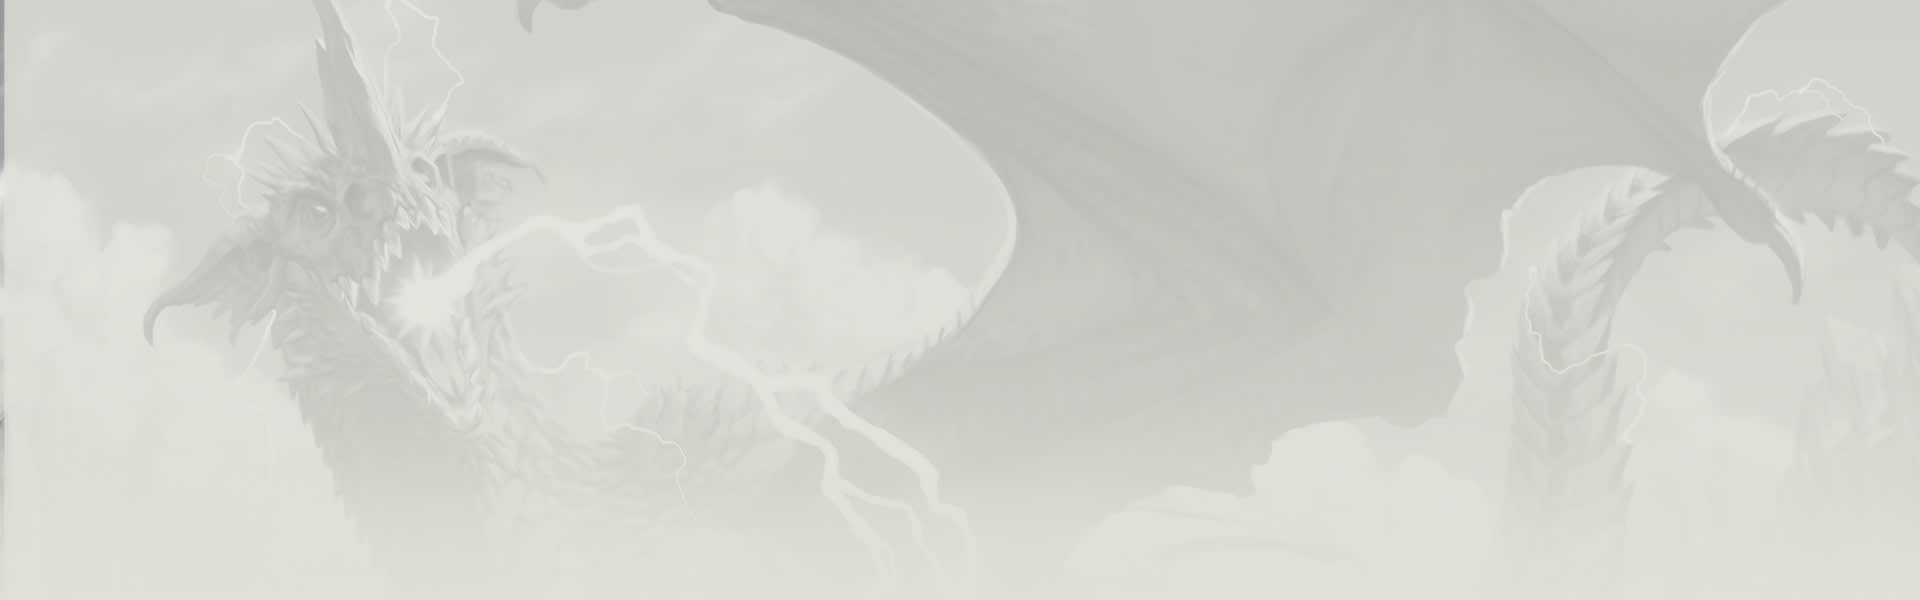 Dragões da Ilha da Tempestade: novo Kit Introdutório para D&D é lançado! -  Joga o D20